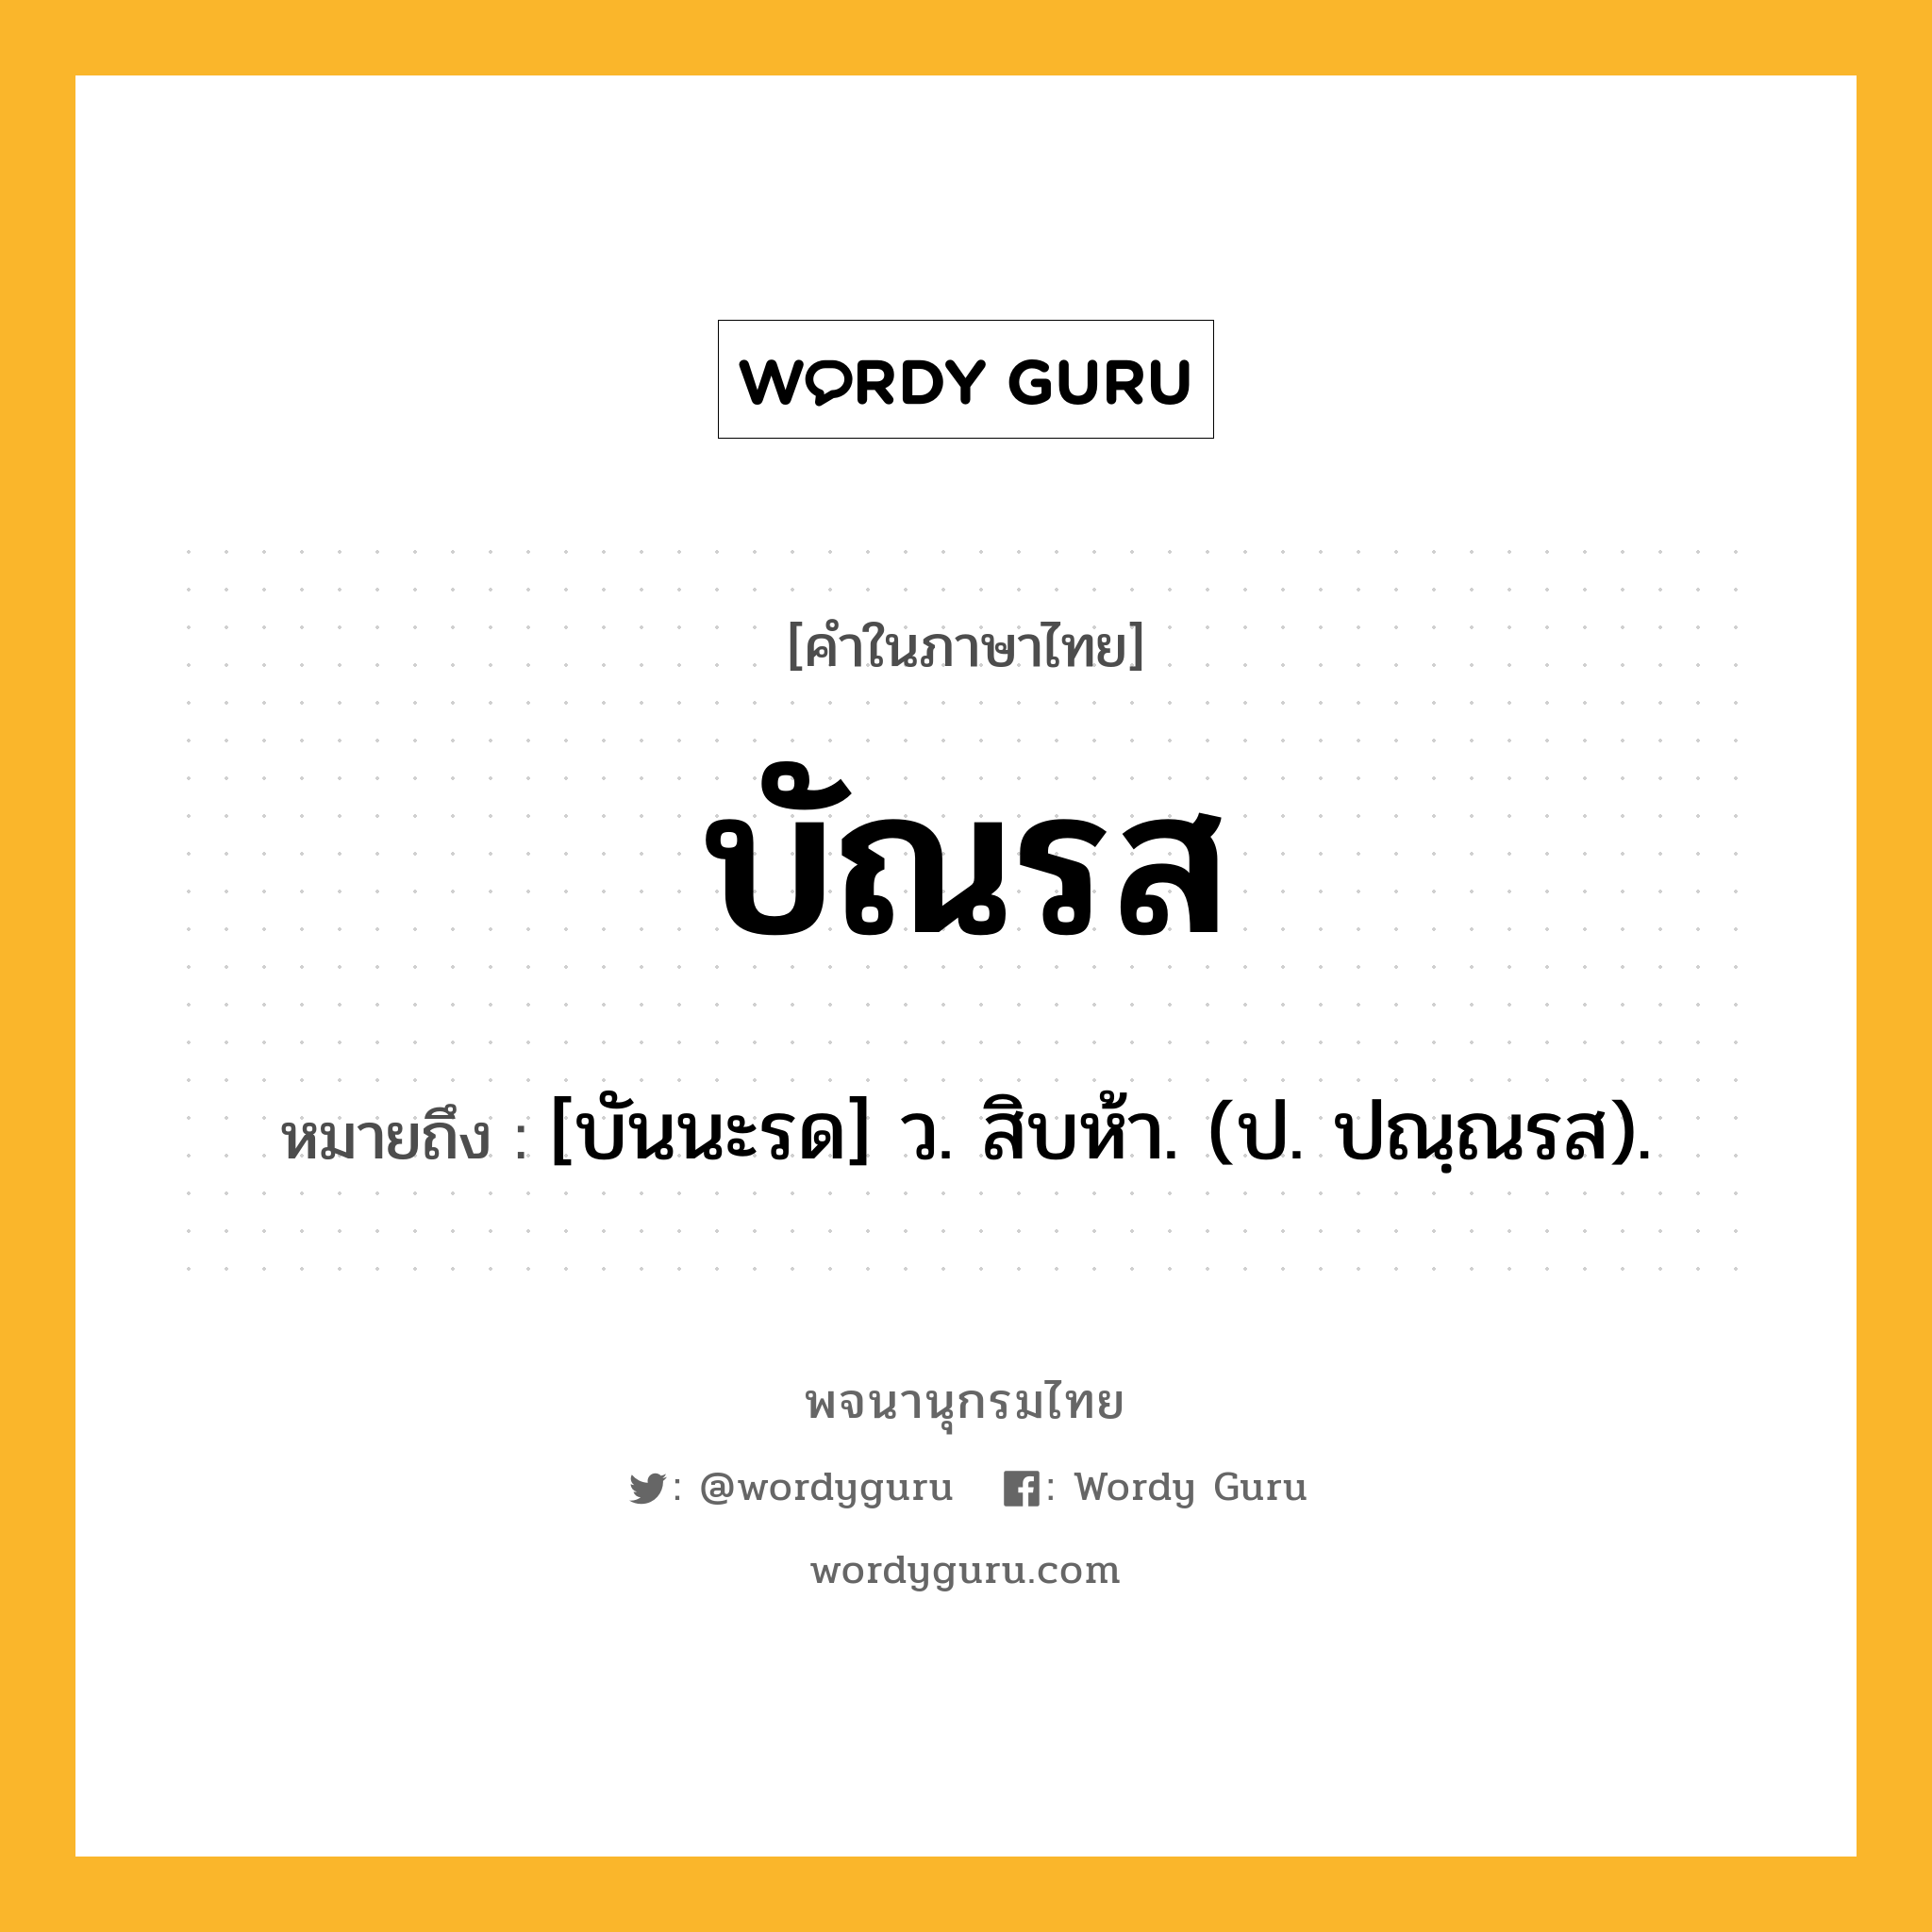 บัณรส หมายถึงอะไร?, คำในภาษาไทย บัณรส หมายถึง [บันนะรด] ว. สิบห้า. (ป. ปณฺณรส).